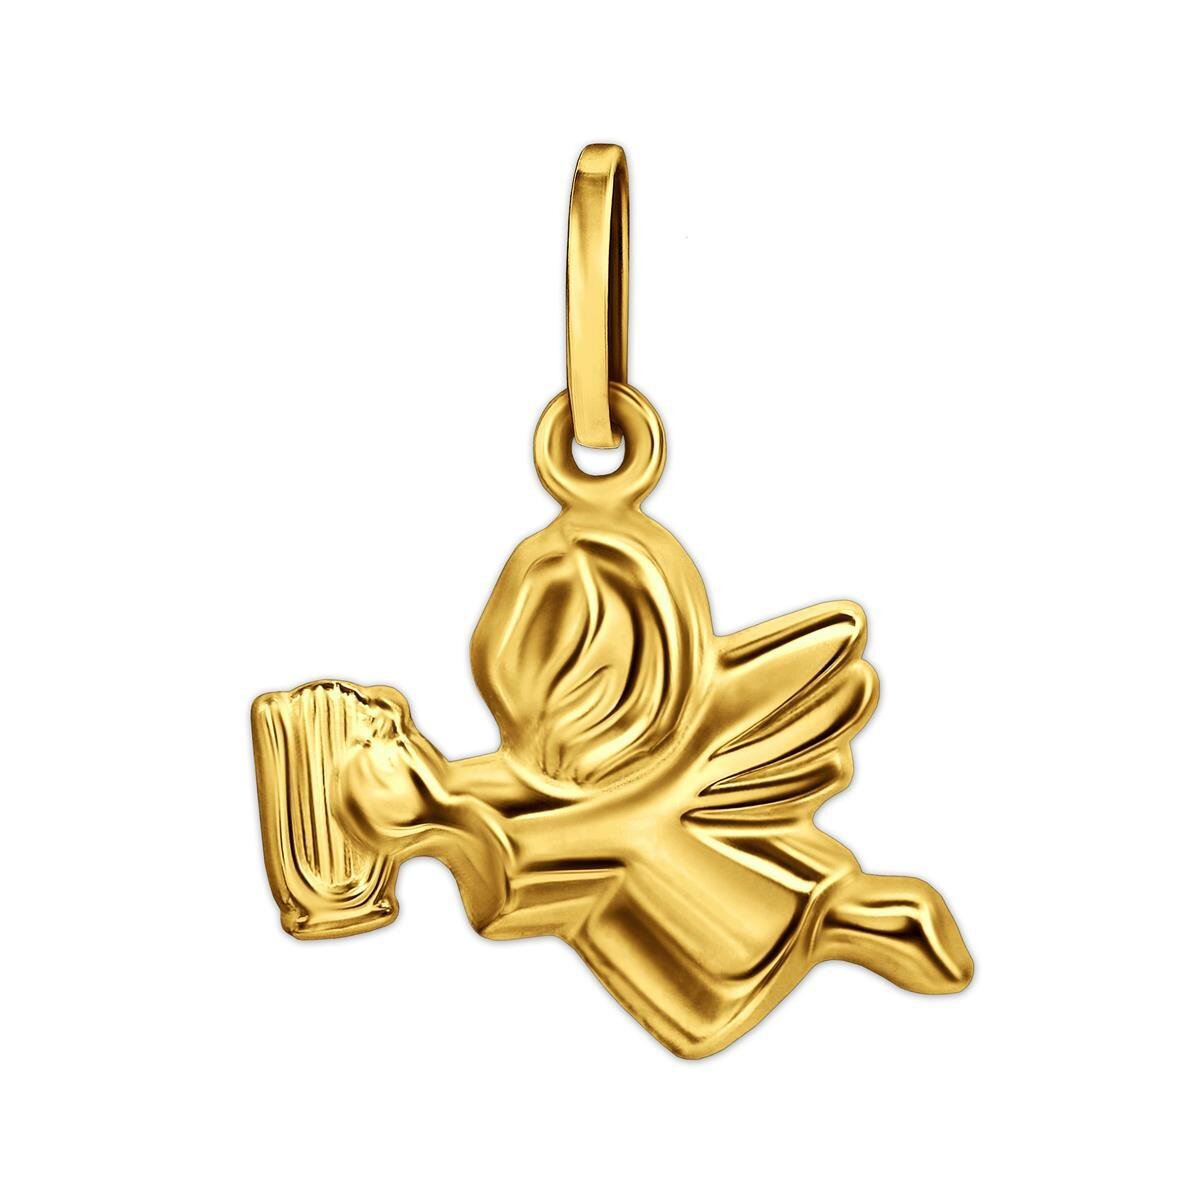 Goldener Anh&auml;nger Schutzengel 10 x 13 mm fliegend mit Harfe  fig&uuml;rliche Form 333 GOLD 8 KARAT